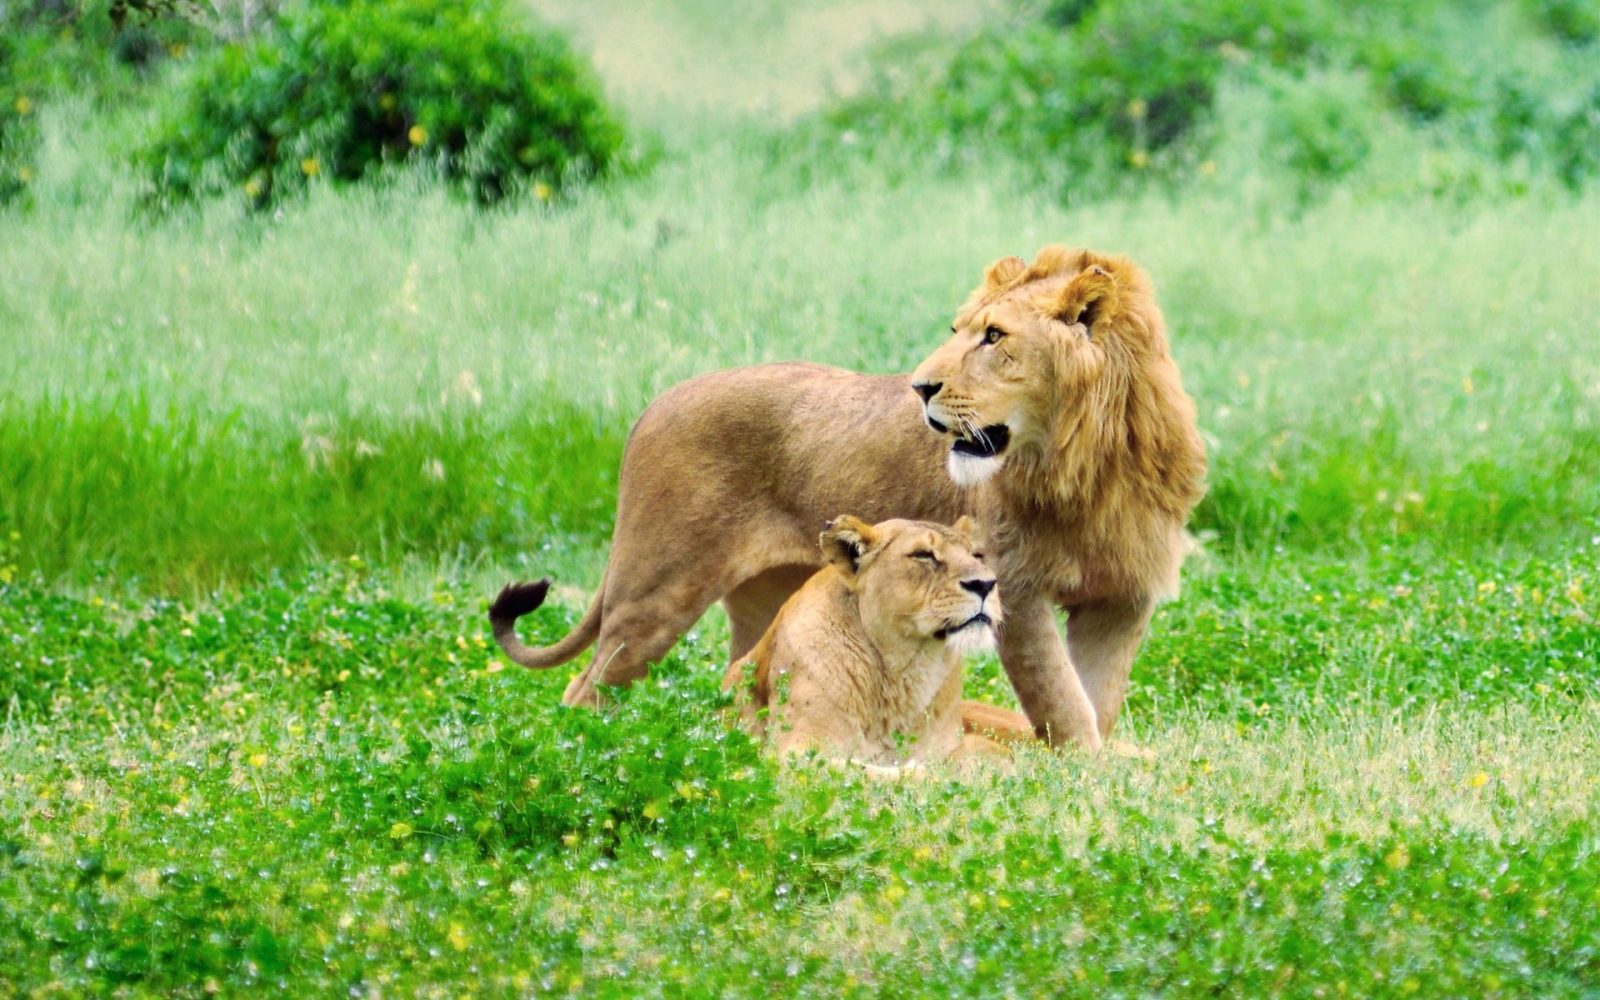 fauna selvatica sfondo hd,natura,leone,felidae,animale terrestre,leone masai